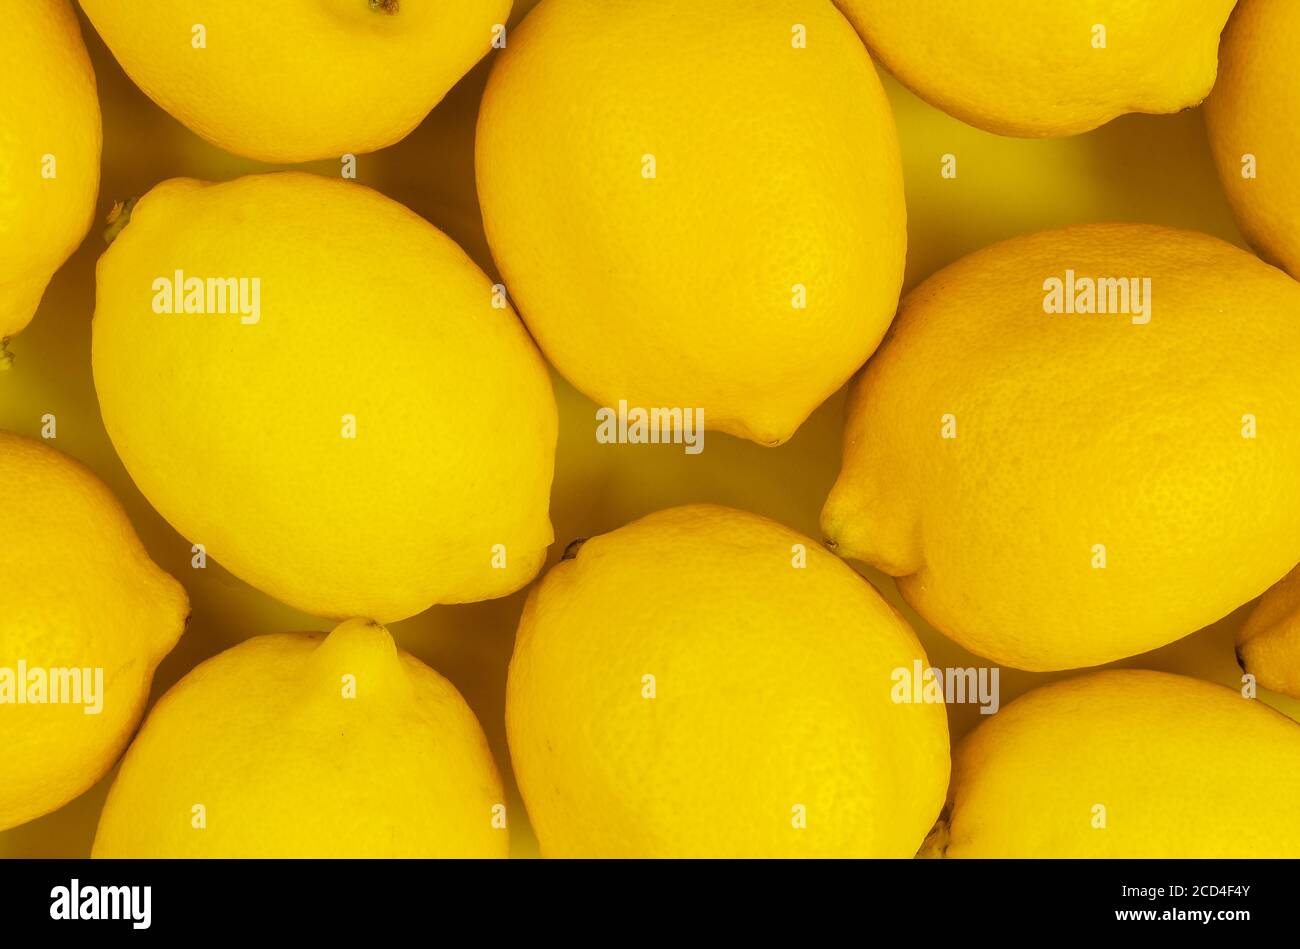 Vue de dessus de citrons mûrs sur fond jaune Banque D'Images